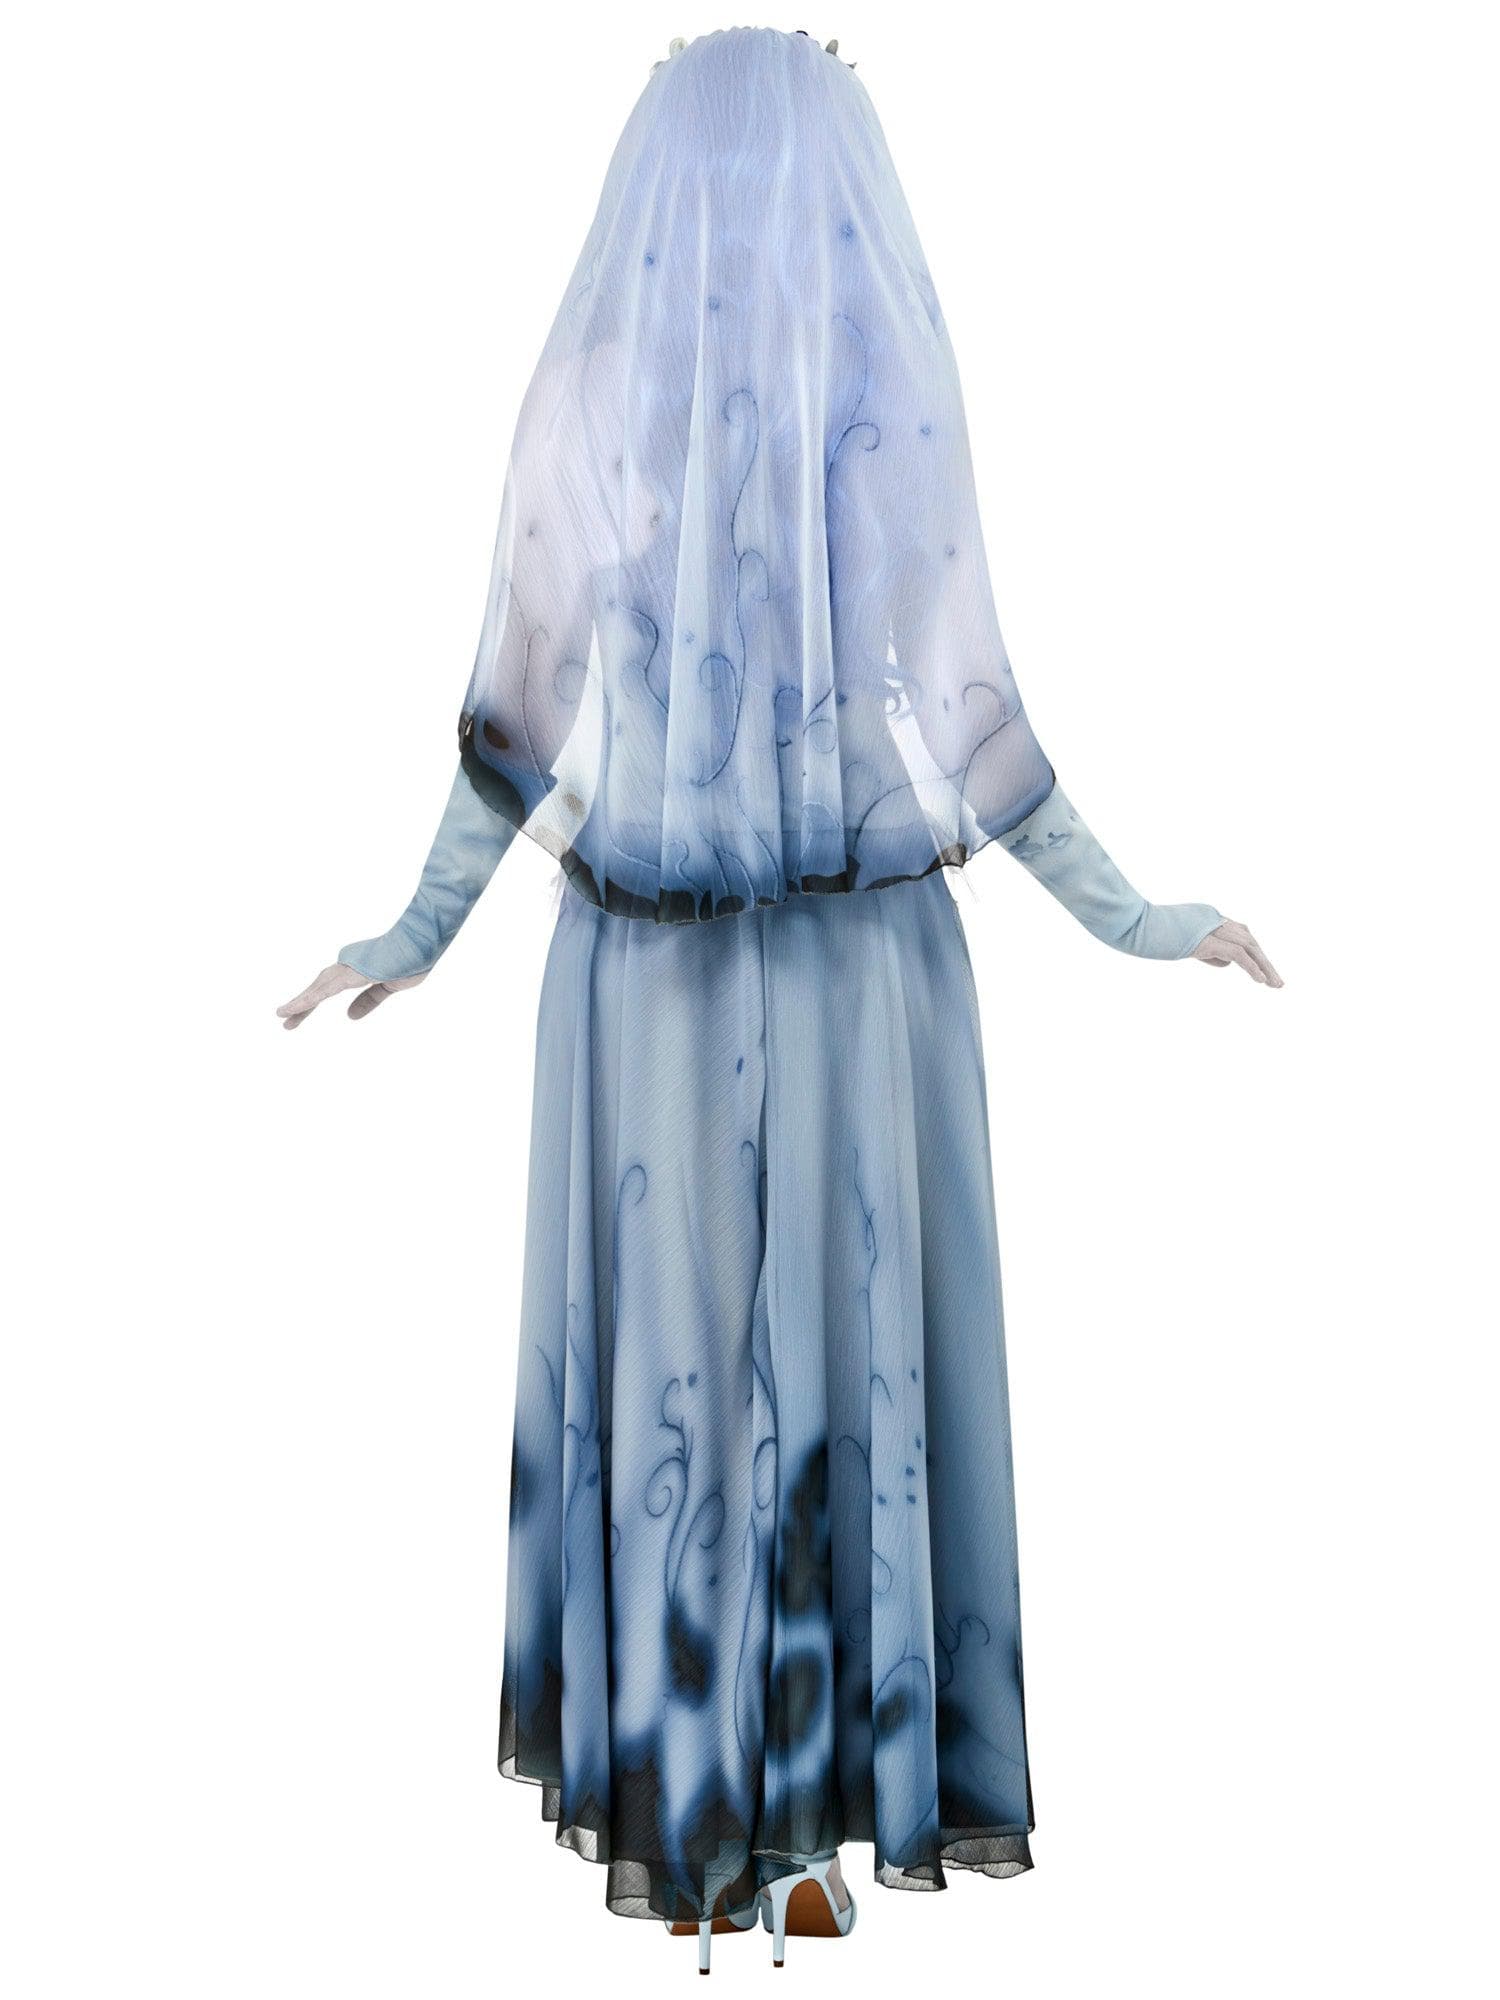 Women's Corpse Bride Costume